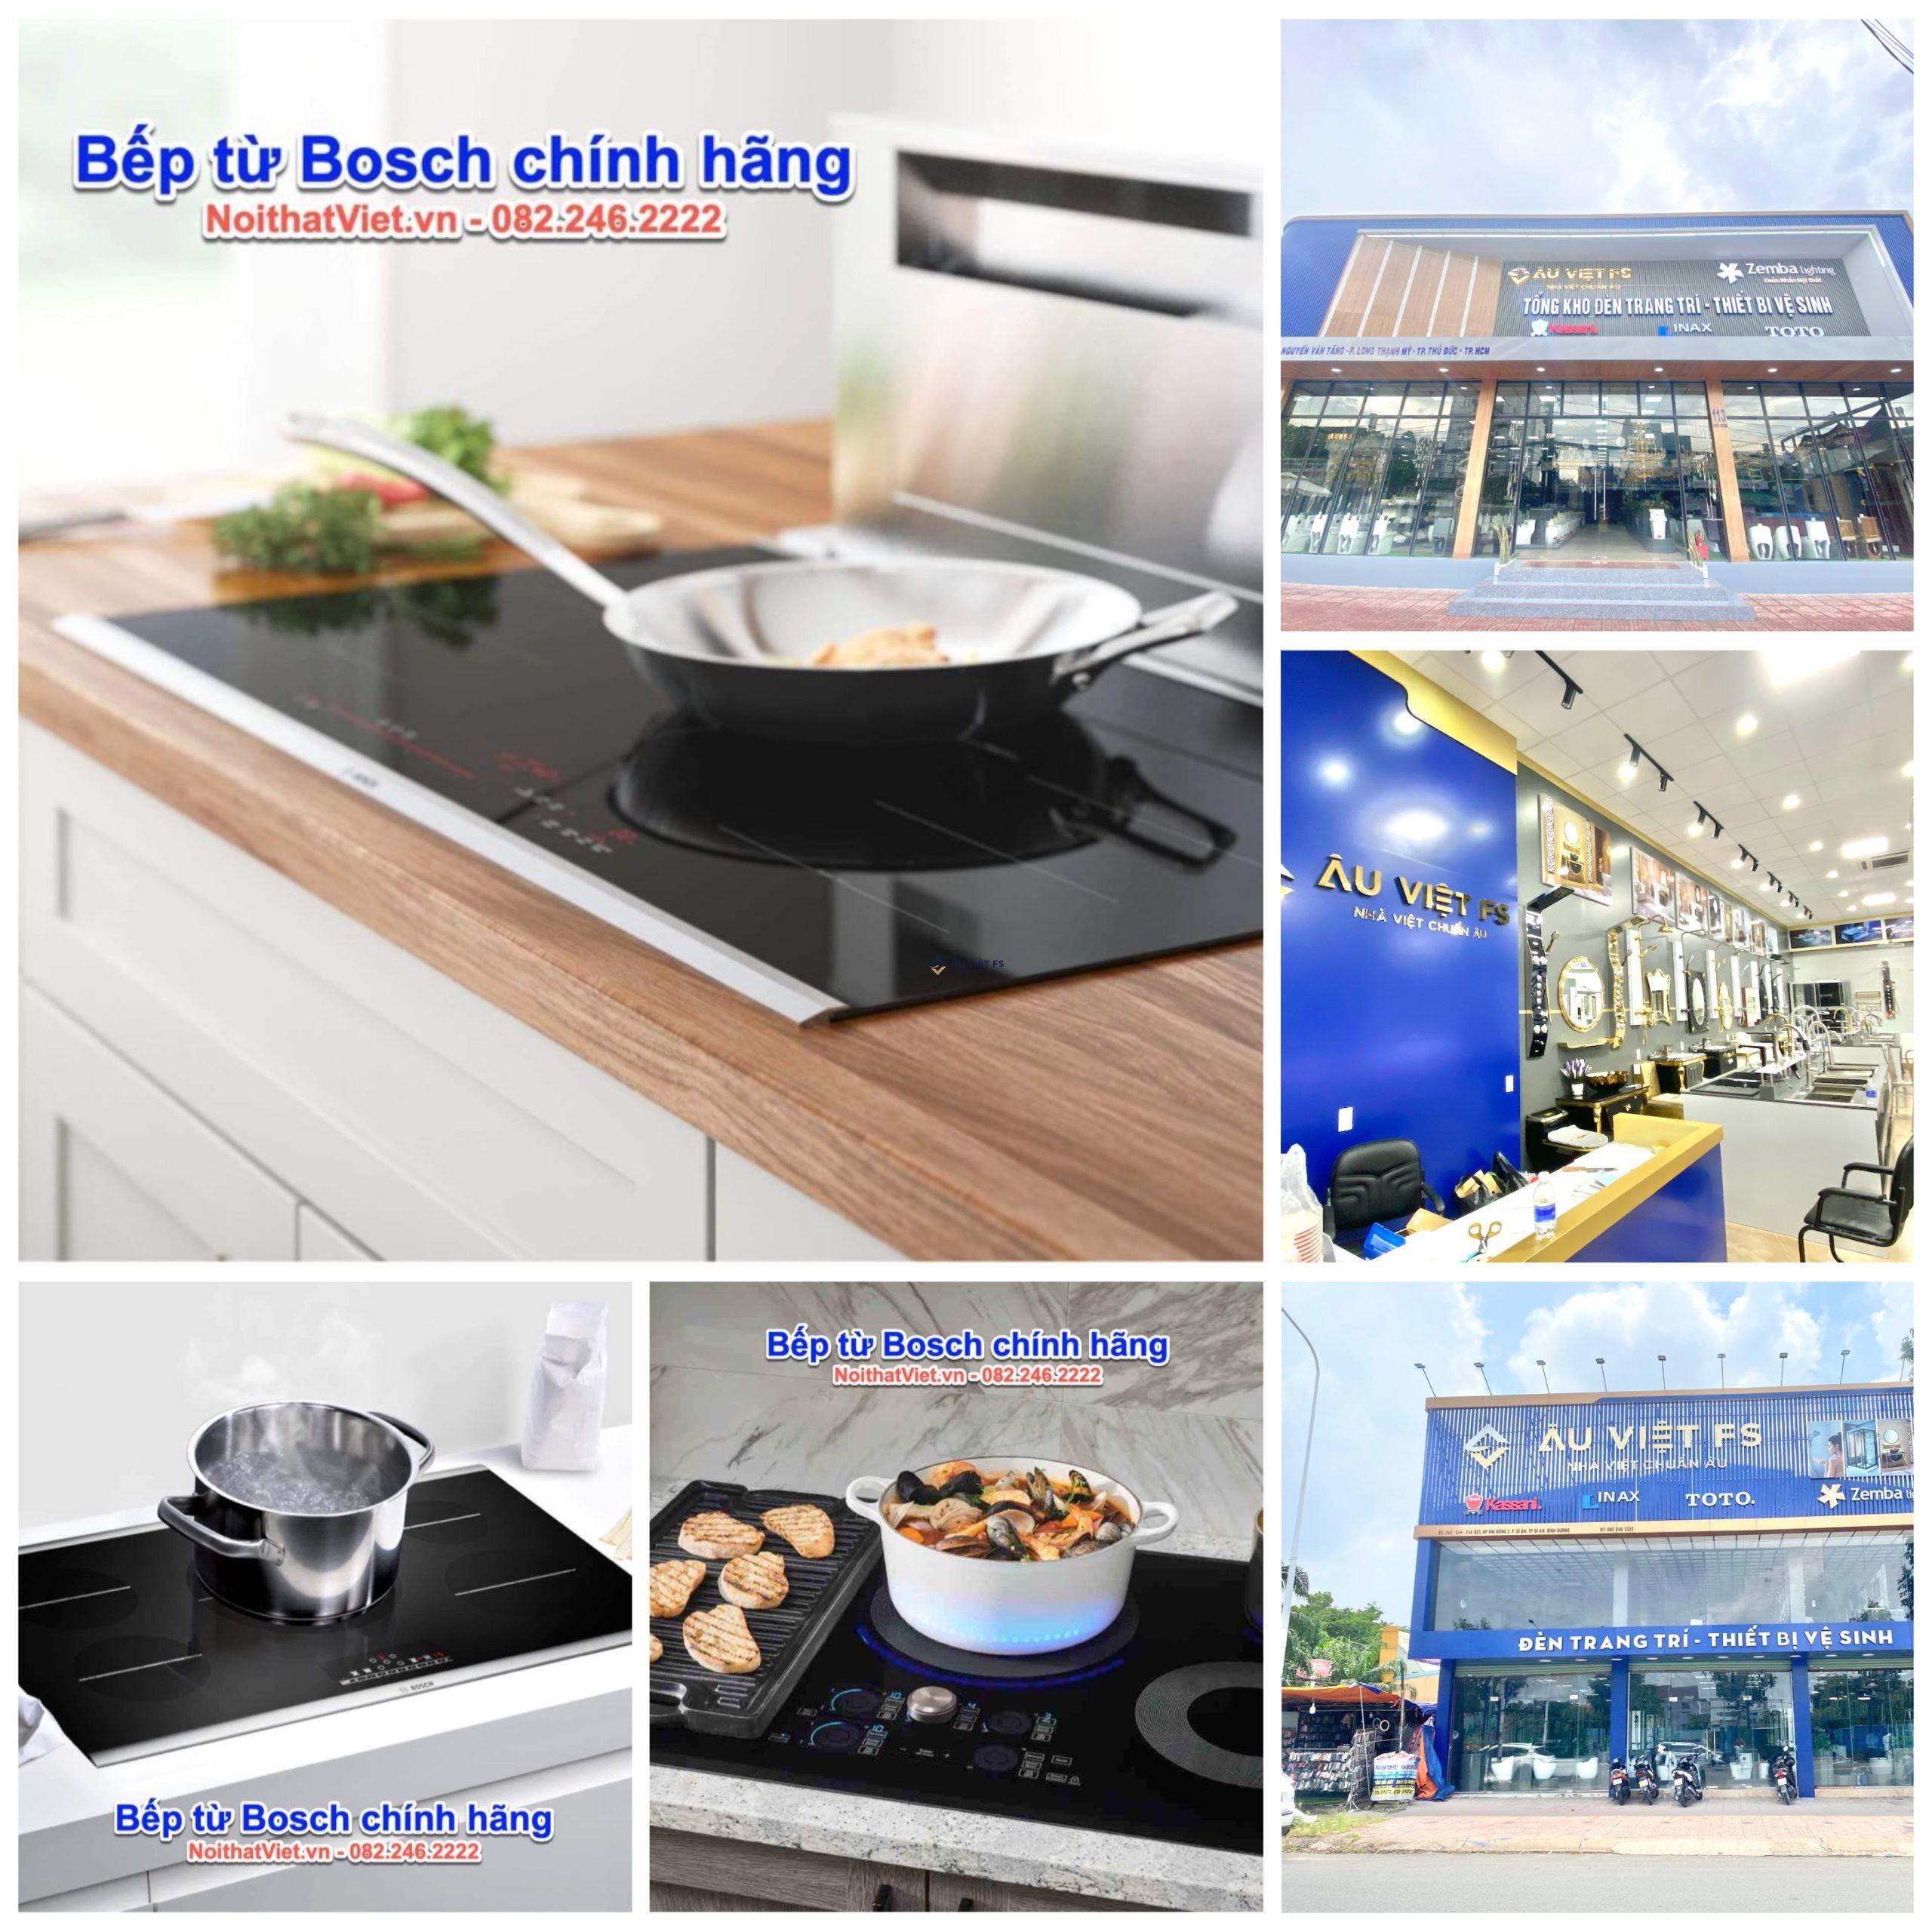 Giá Bosch 2024, Địa chỉ mua thiết bị bếp Bosch giá rẻ tại TPHCM, Bosch, Bếp từ Bosch, Giá Bosch, Showroom Bosch, Thiết bị nhà bếp